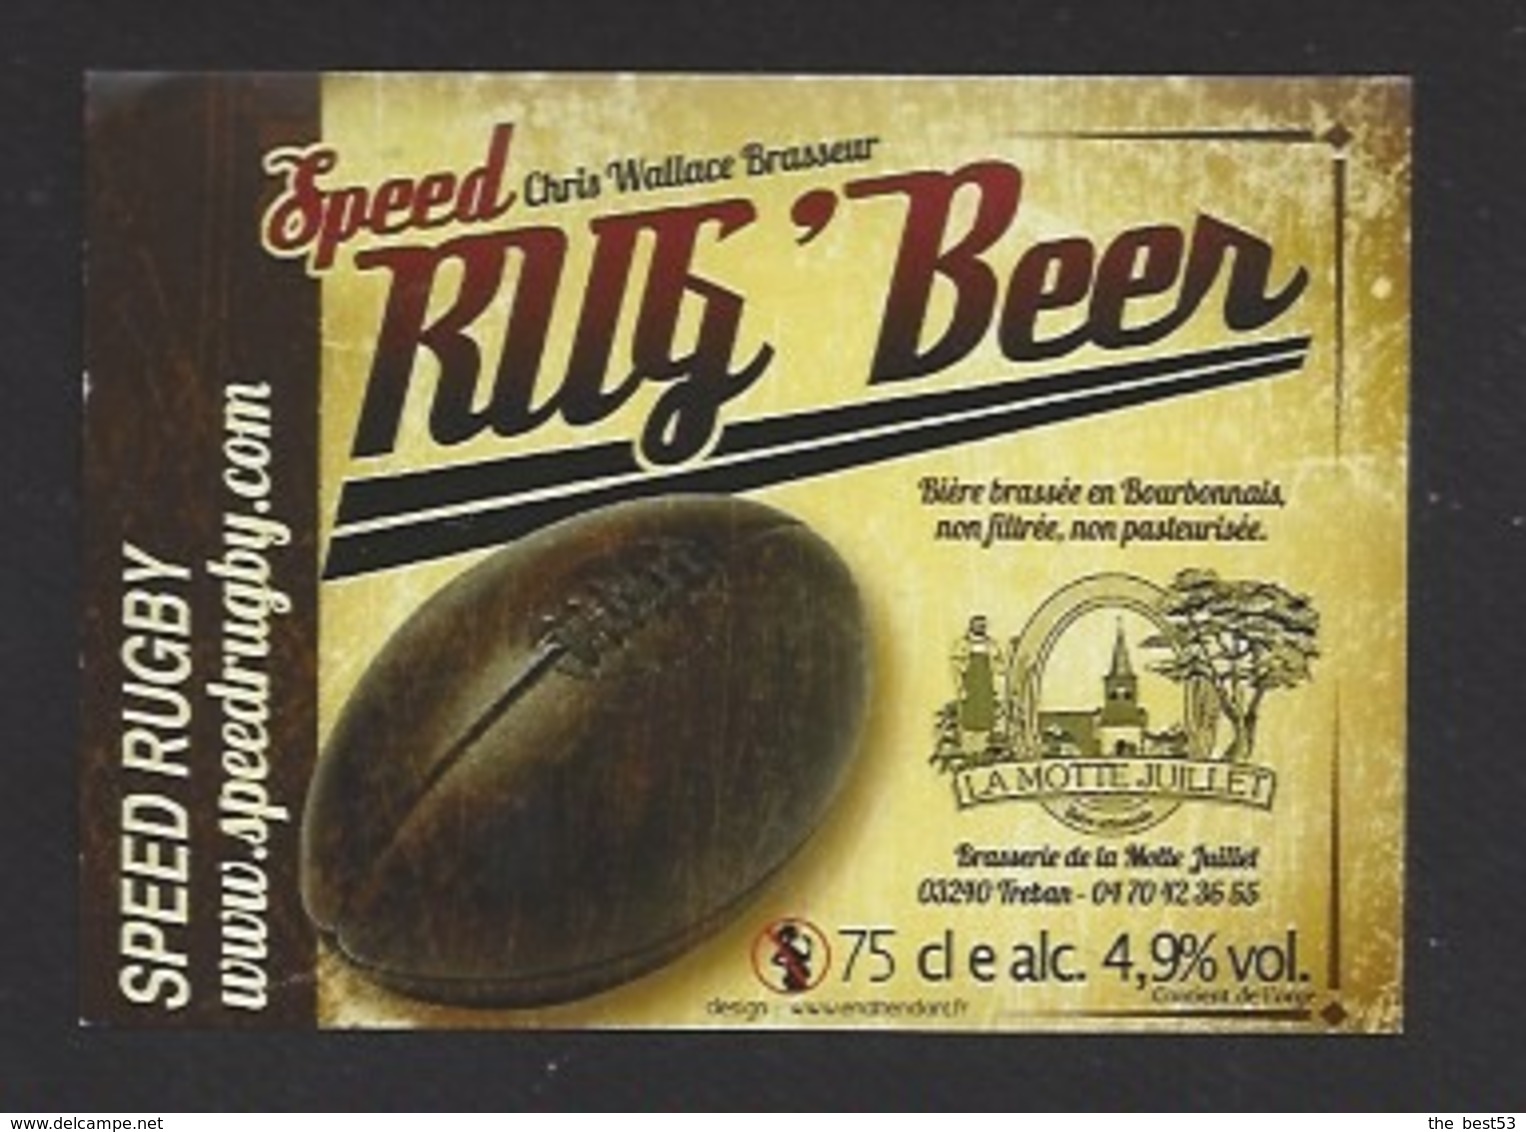 Etiquette De Bière  -  Rug'Beer  -  Speed Rgby -  Brasserie La Motte Juillet à Tréban   (03) - Bière